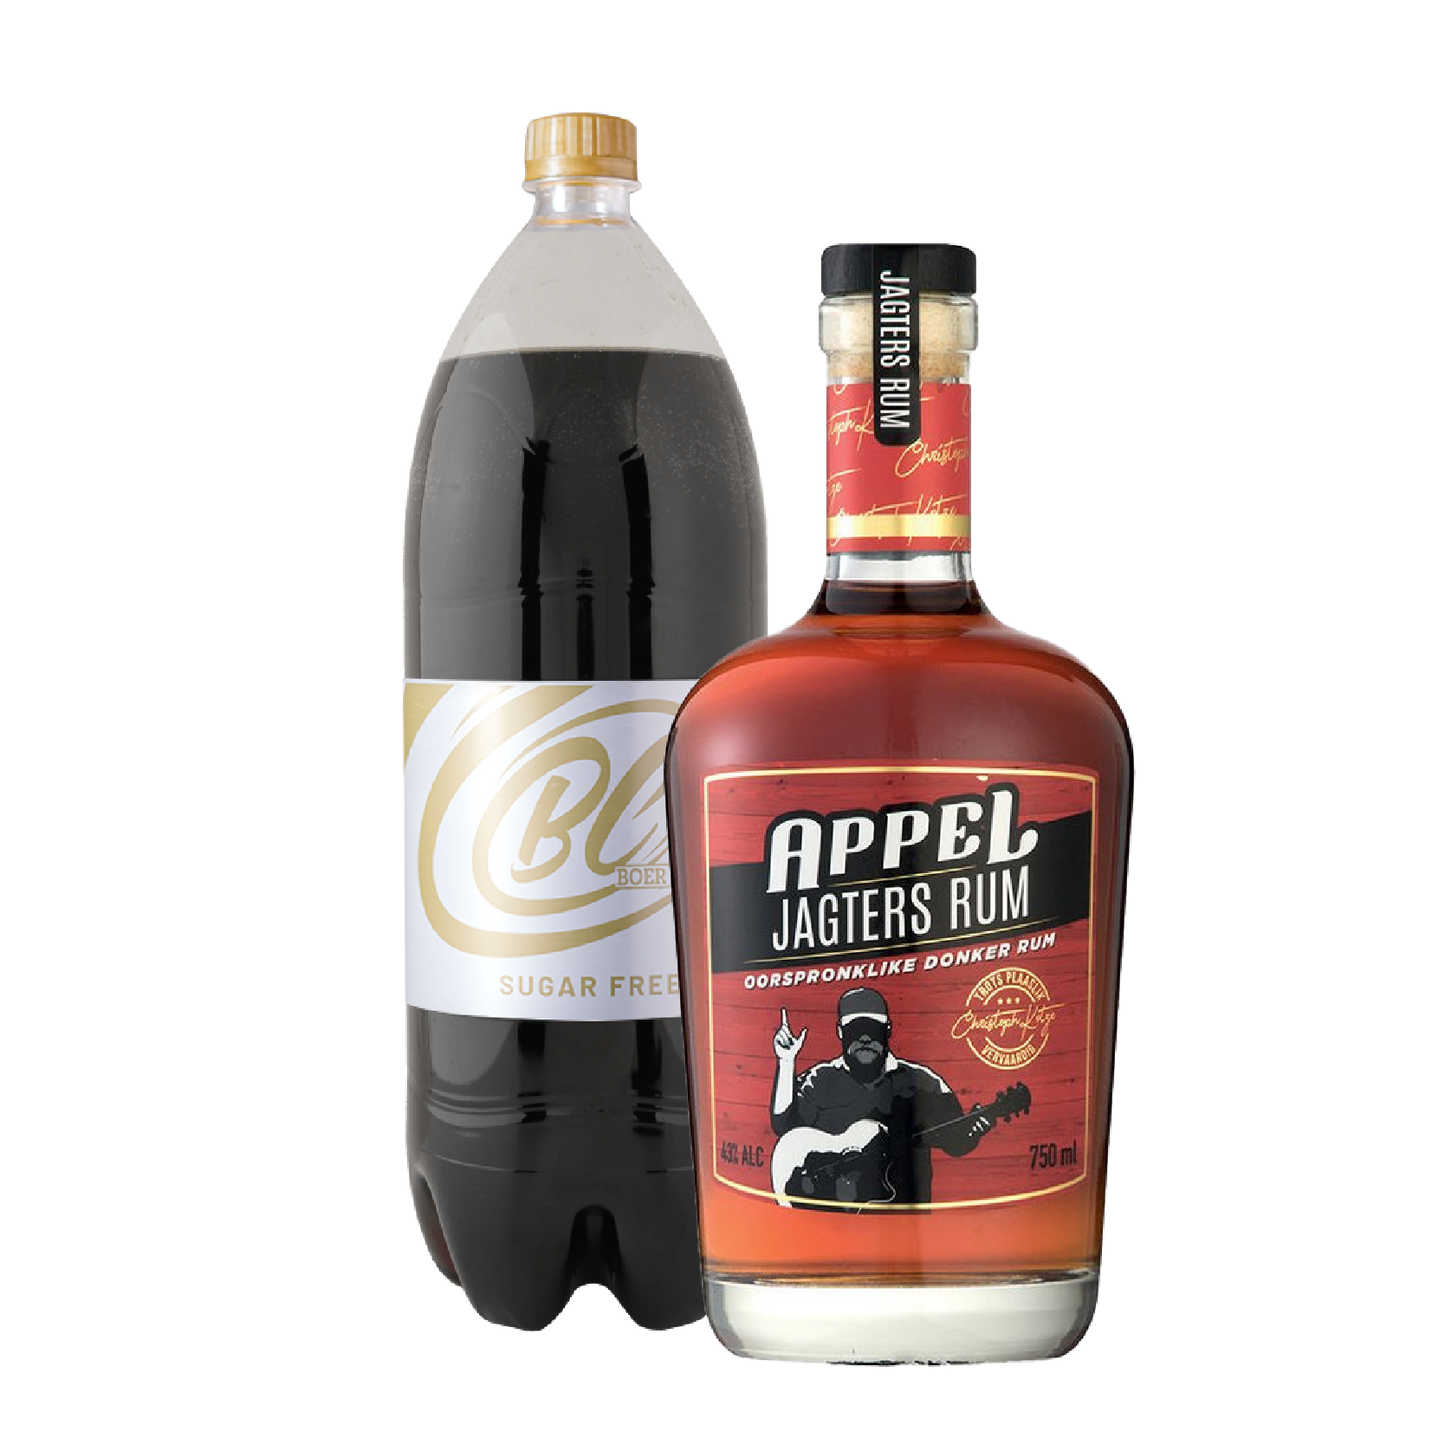 Appel Jagters Dark Rum 750ml & Boer Cola Sugar Free 2L